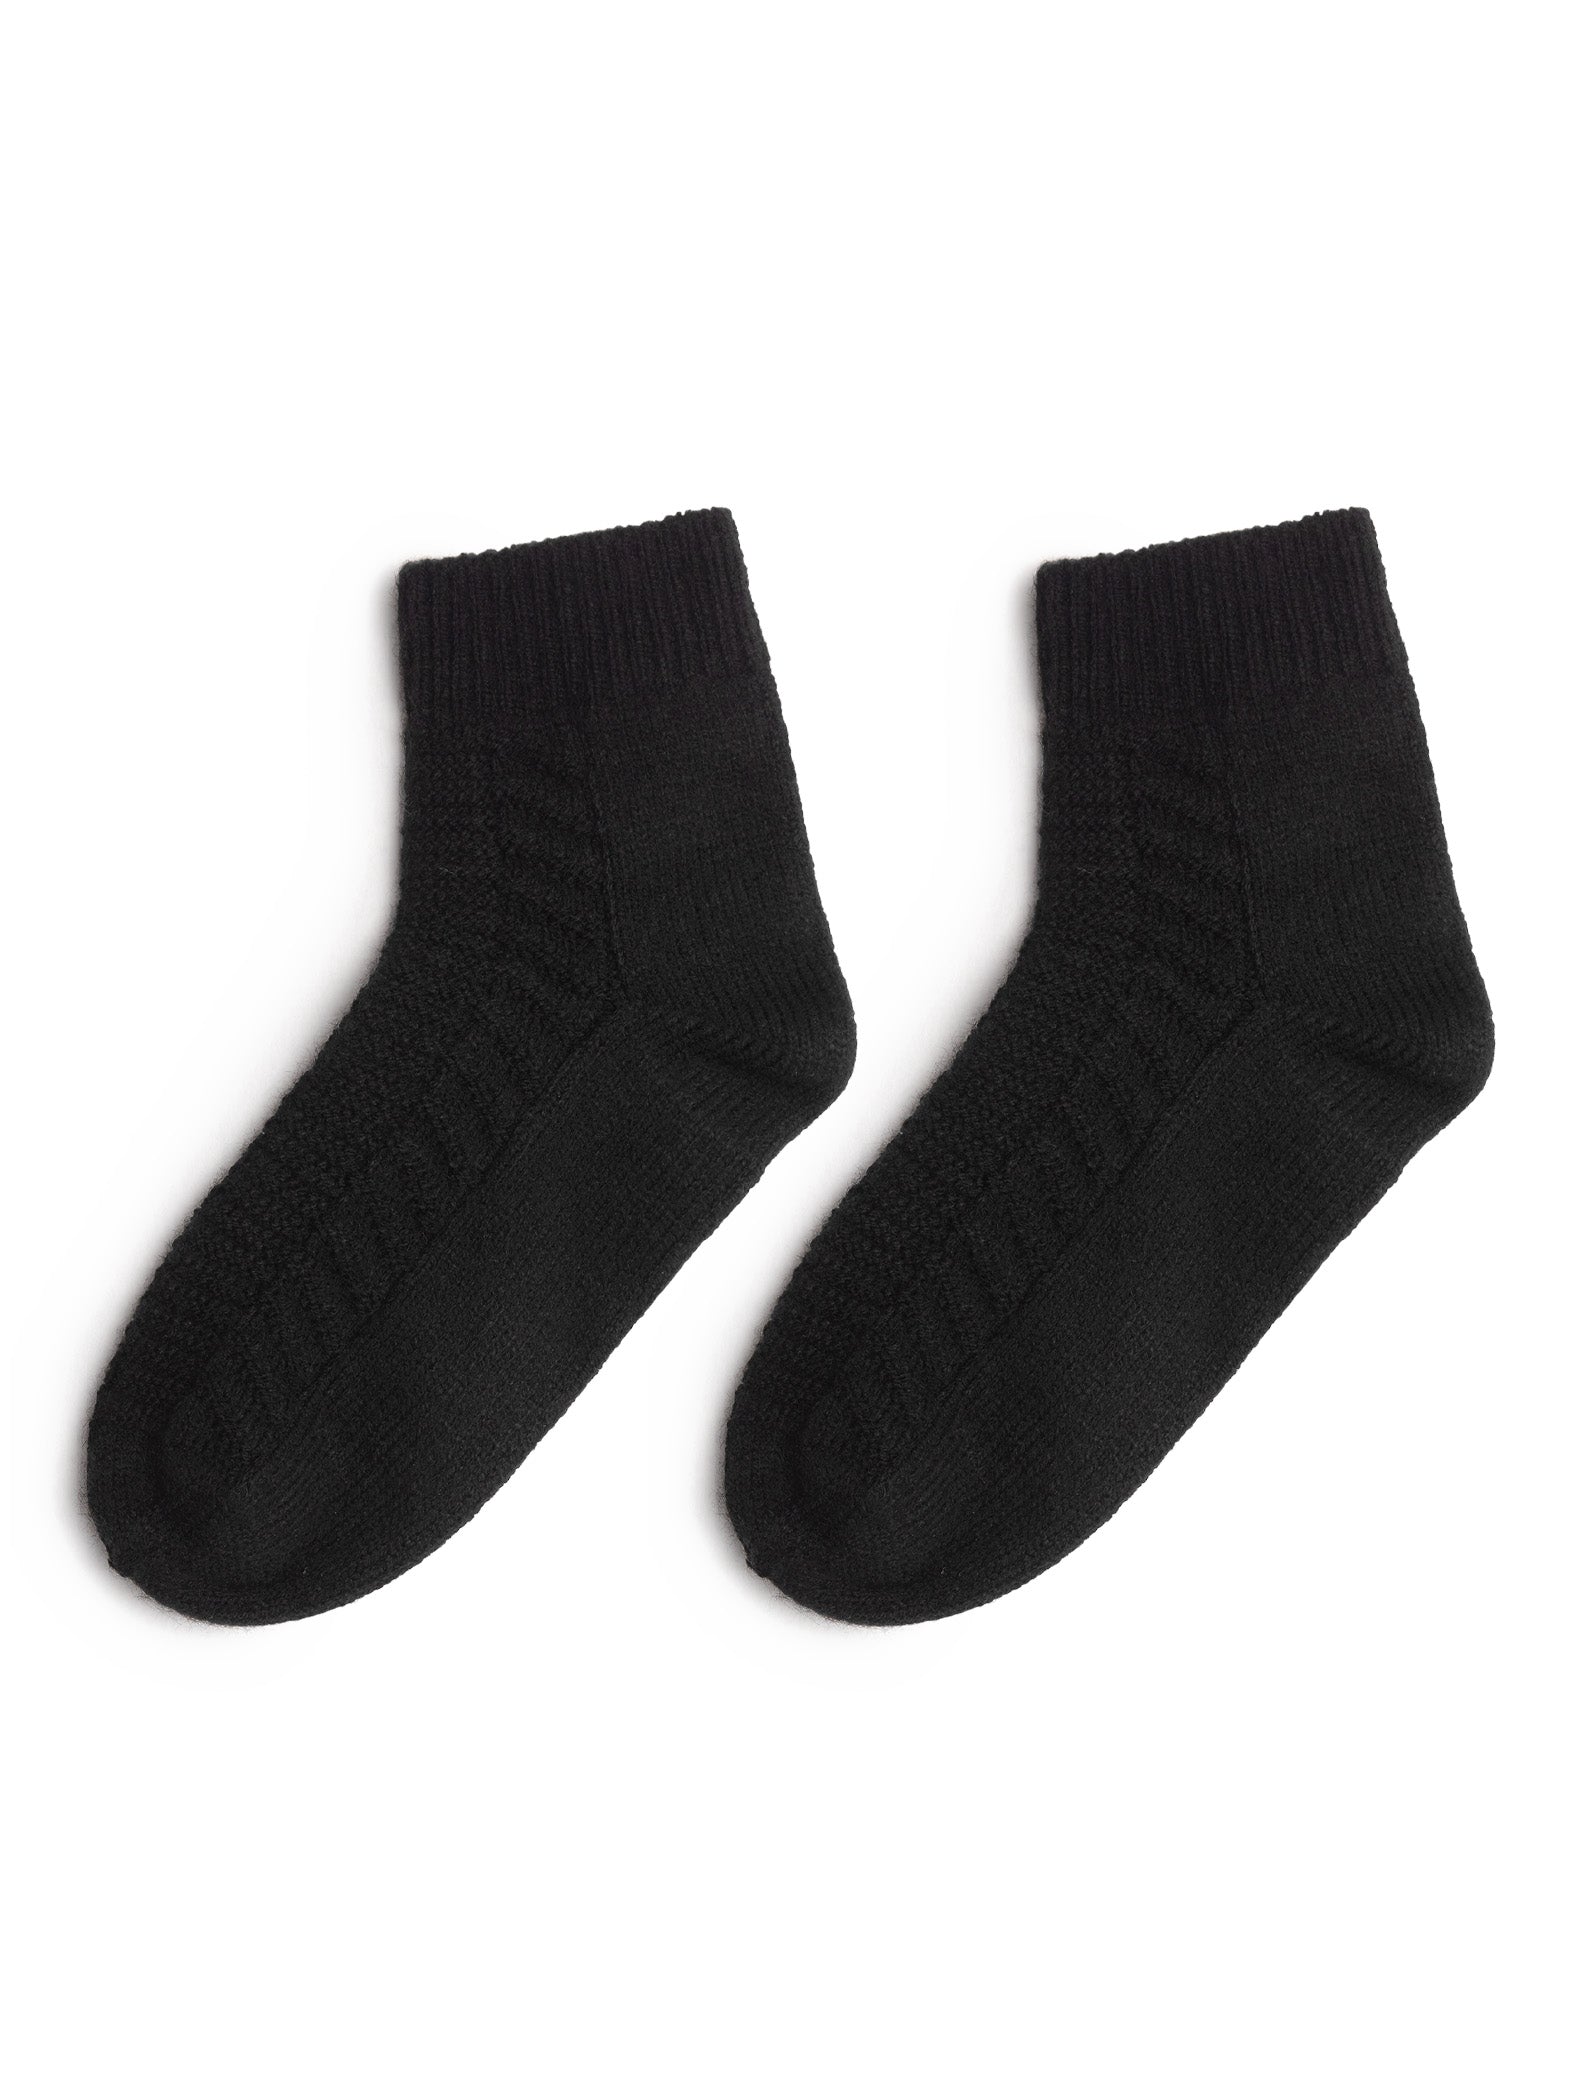 Black Ankle Length Wool Socks